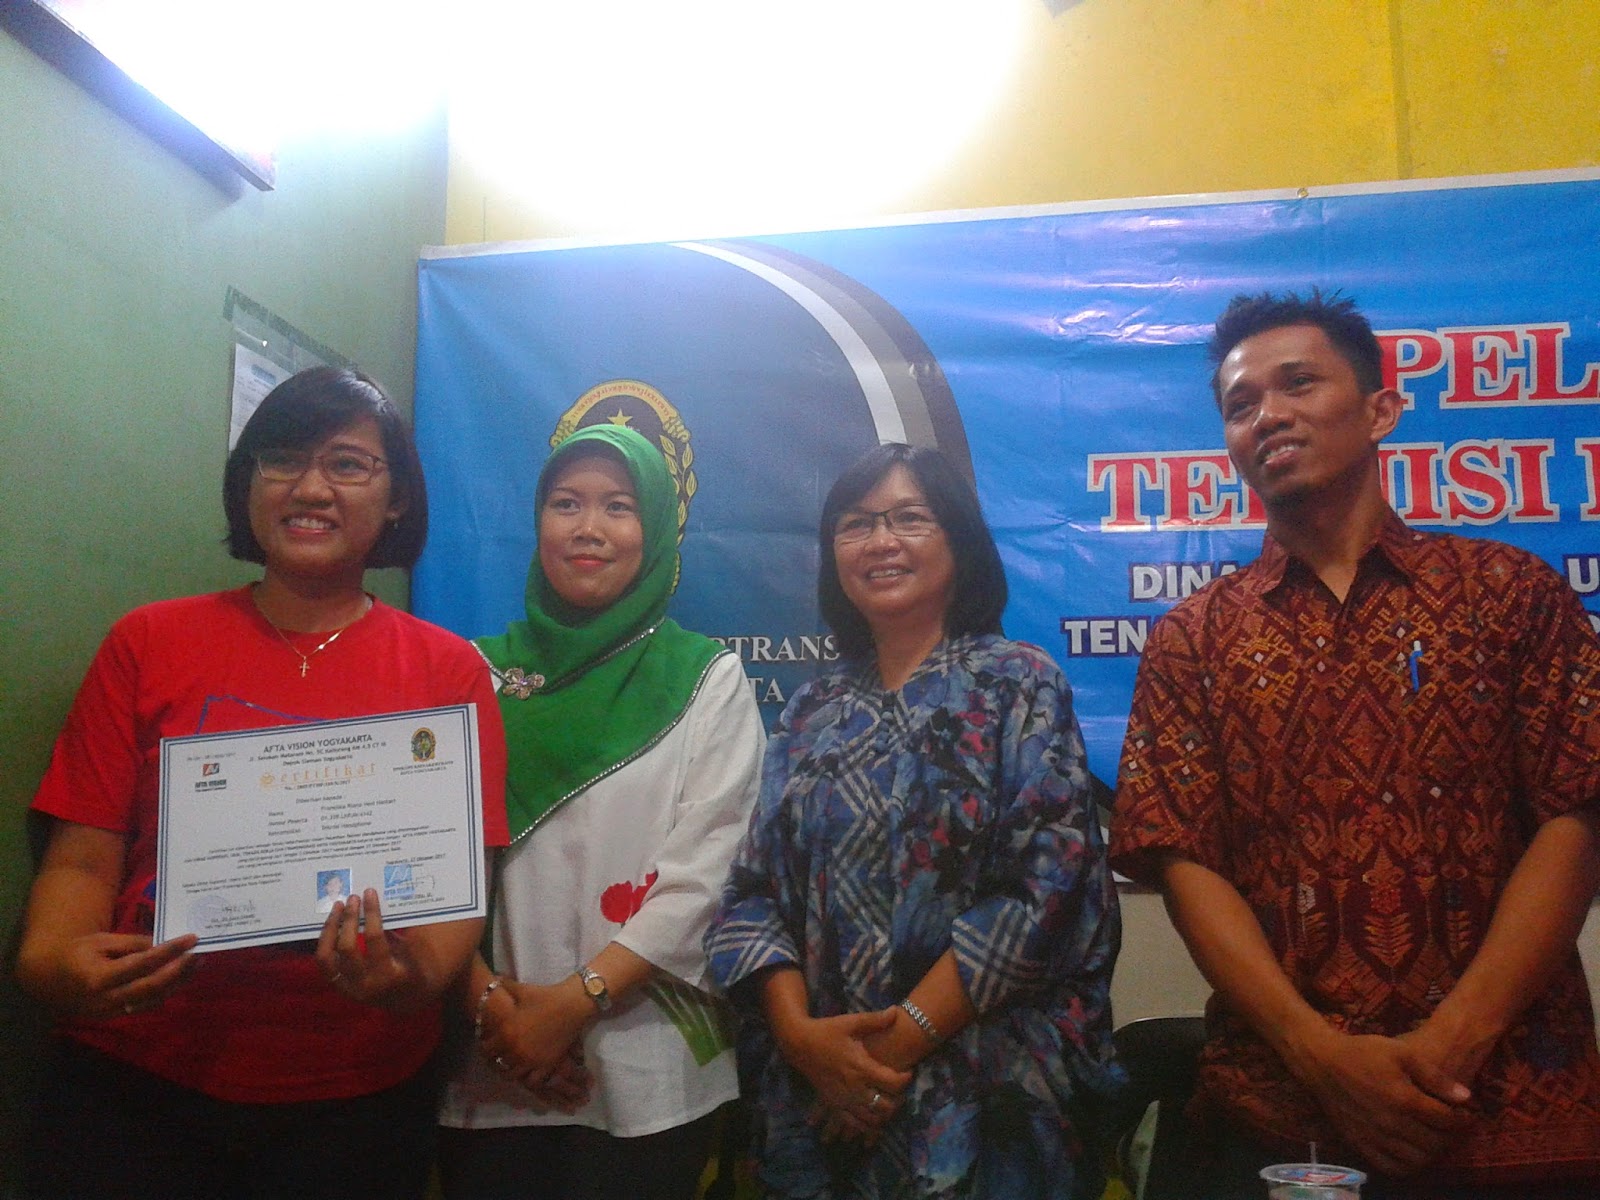 Terima kasih untuk kesempatan dan apresiasi dari DINKOPUKMNAKERTRANS LPK Alfabank Yogyakarta dan AftaVision Pusat Pelatihan Teknisi dan Servis HP